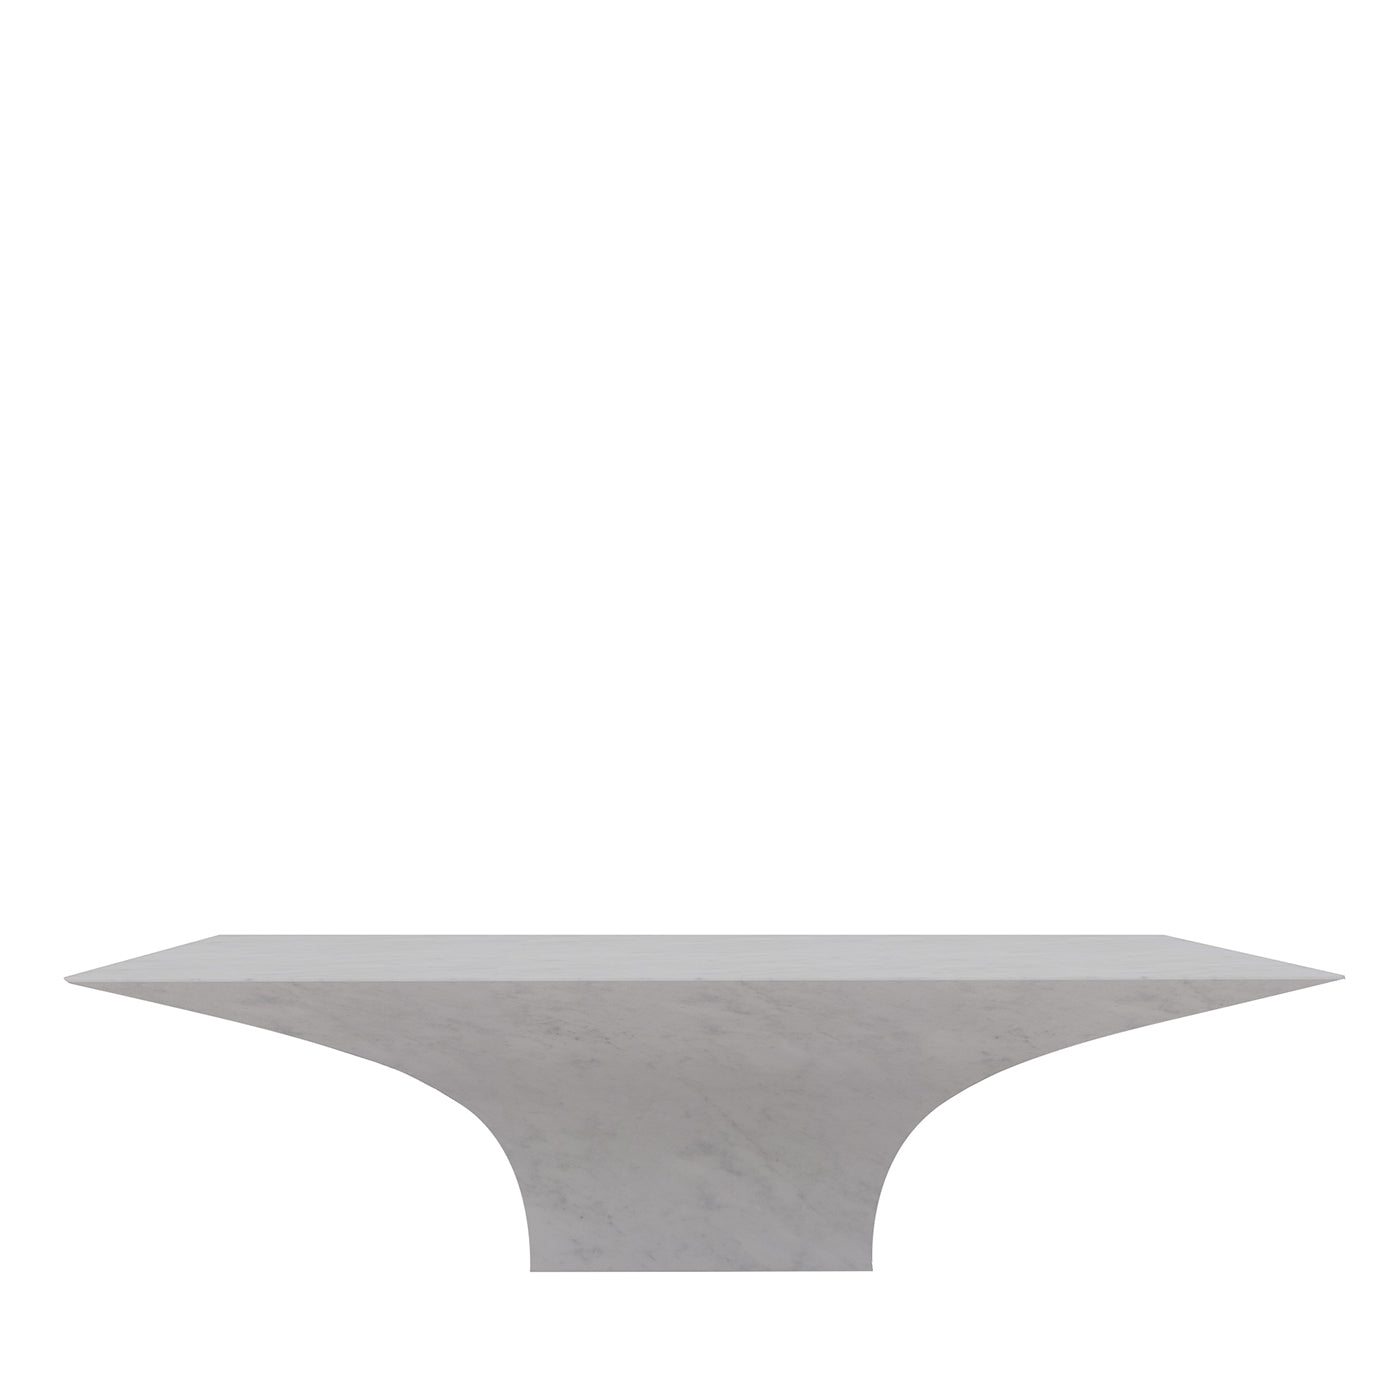 Table basse rectangulaire Sicorace en carrare blanc - Vue principale